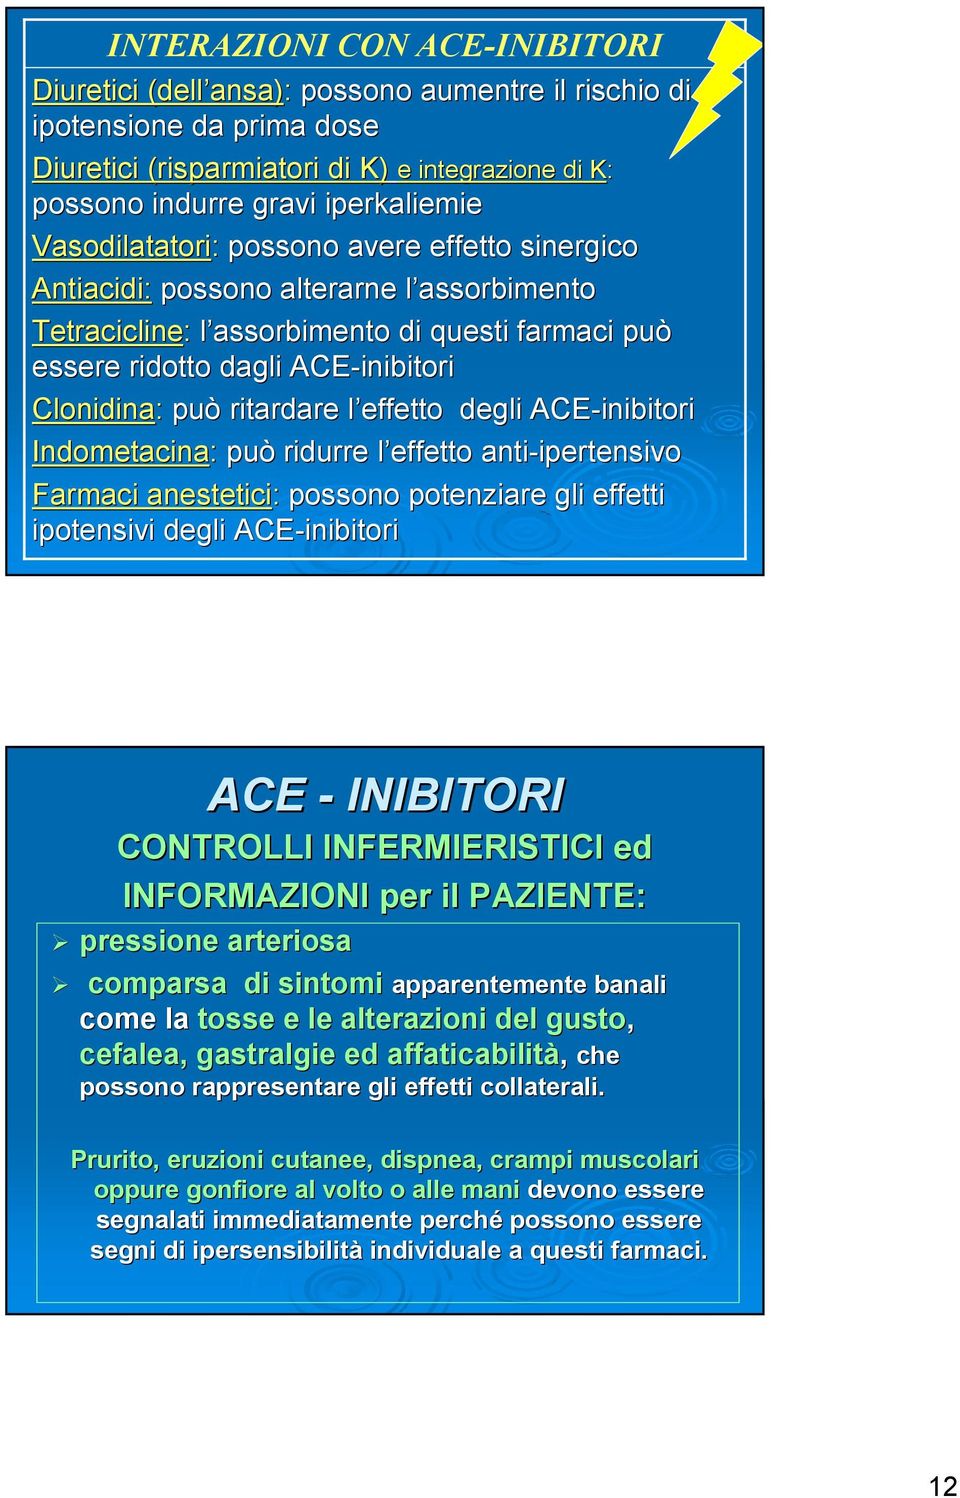 inibitori Clonidina: può ritardare l effetto l effetto degli ACE-inibitori inibitori Indometacina: può ridurre l effetto l anti-ipertensivo ipertensivo Farmaci anestetici: possono potenziare gli